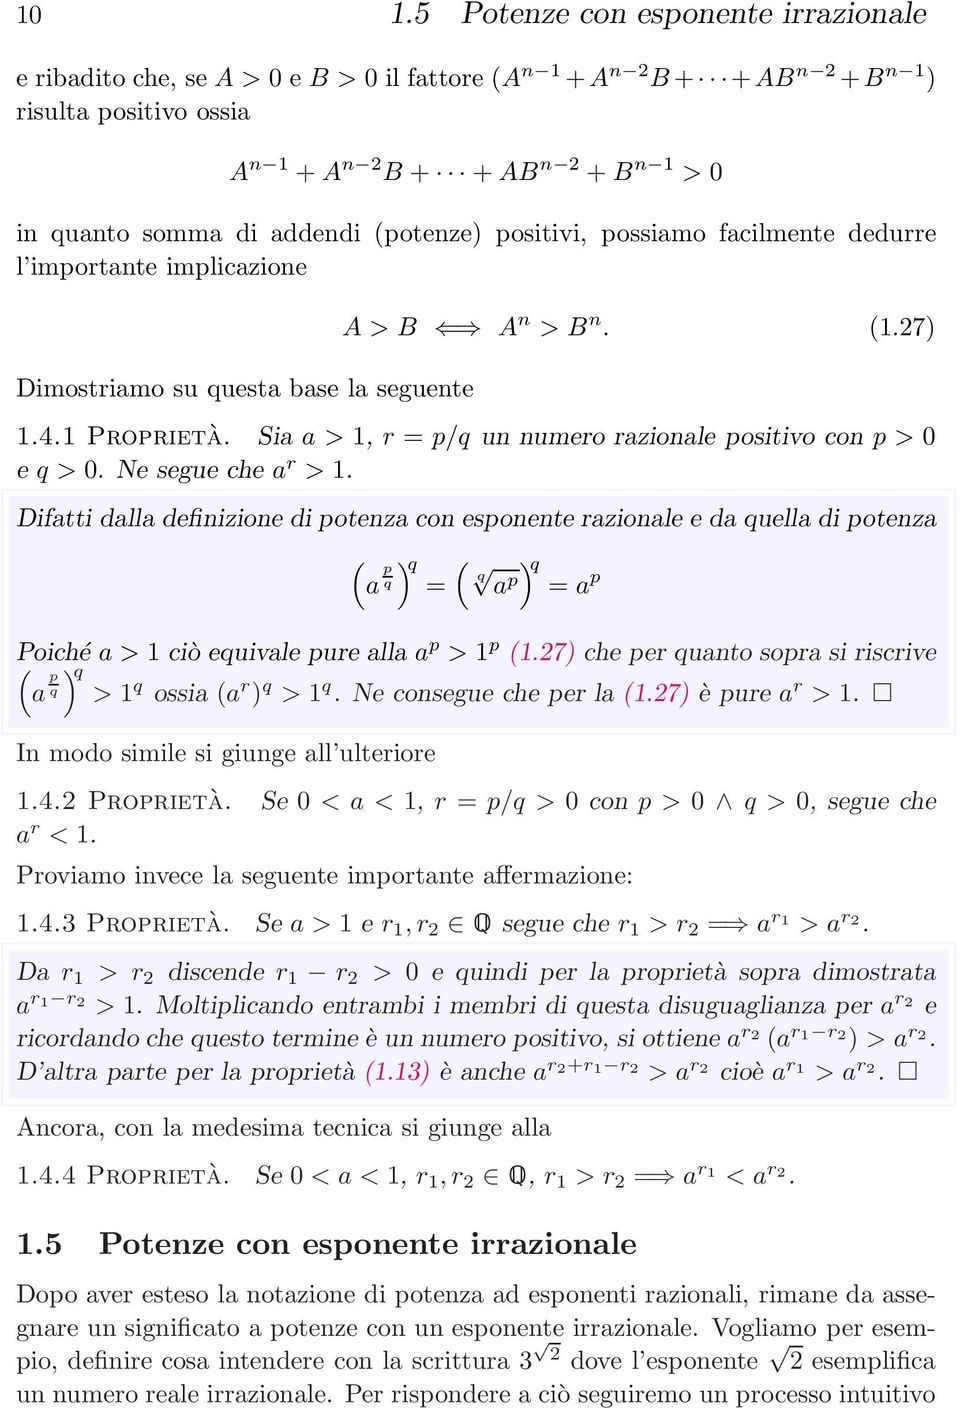 Sia a > 1, r = p/q un numero razionale positivo con p > 0 e q>0. Neseguechea r > 1.